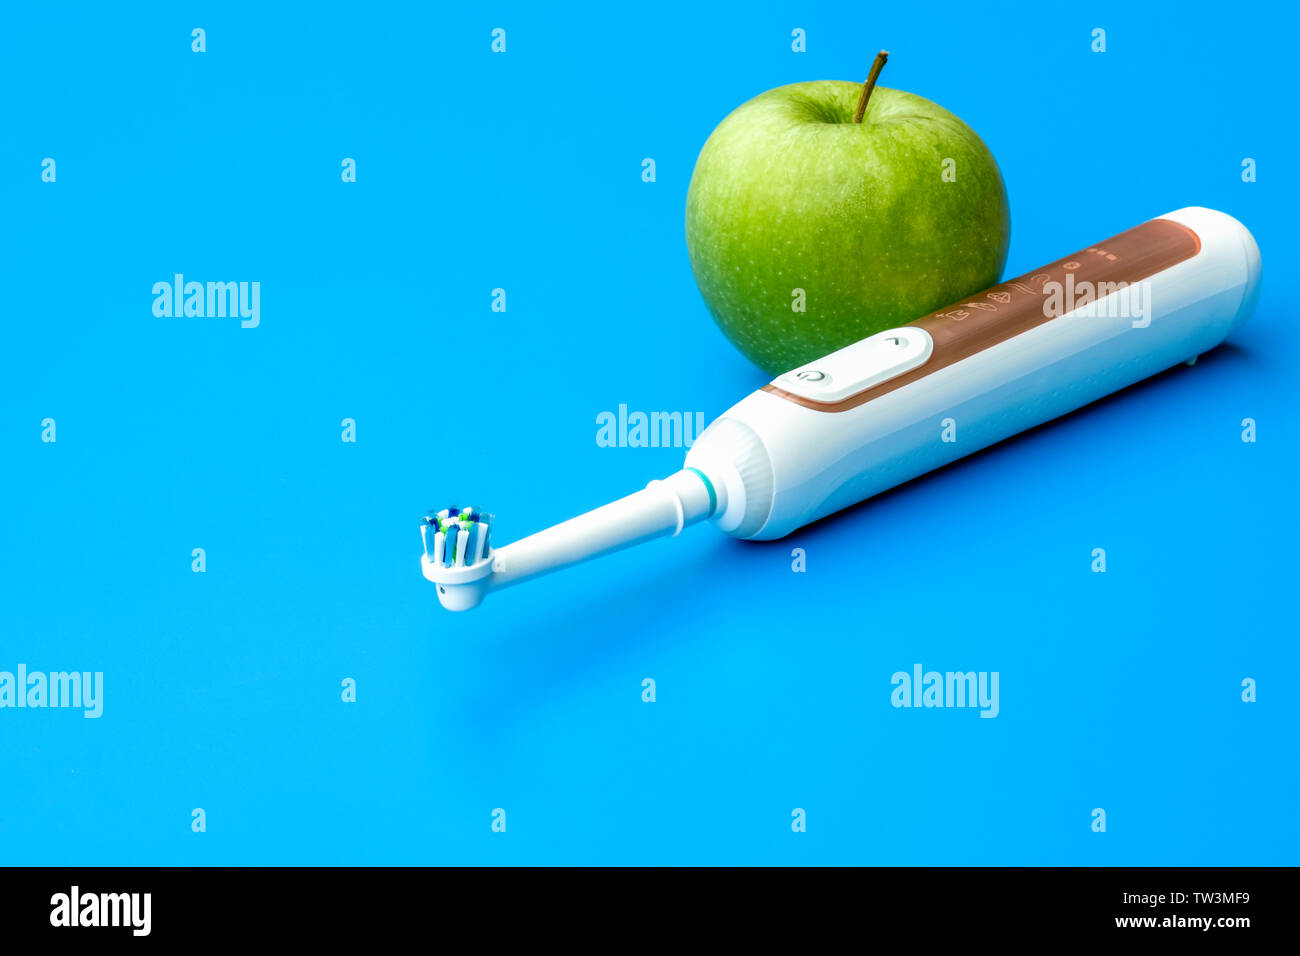 Zahnarzt Konzept grüner Apfel und elektrische Zahnbürste auf blauem Hintergrund-Bild Stockfoto